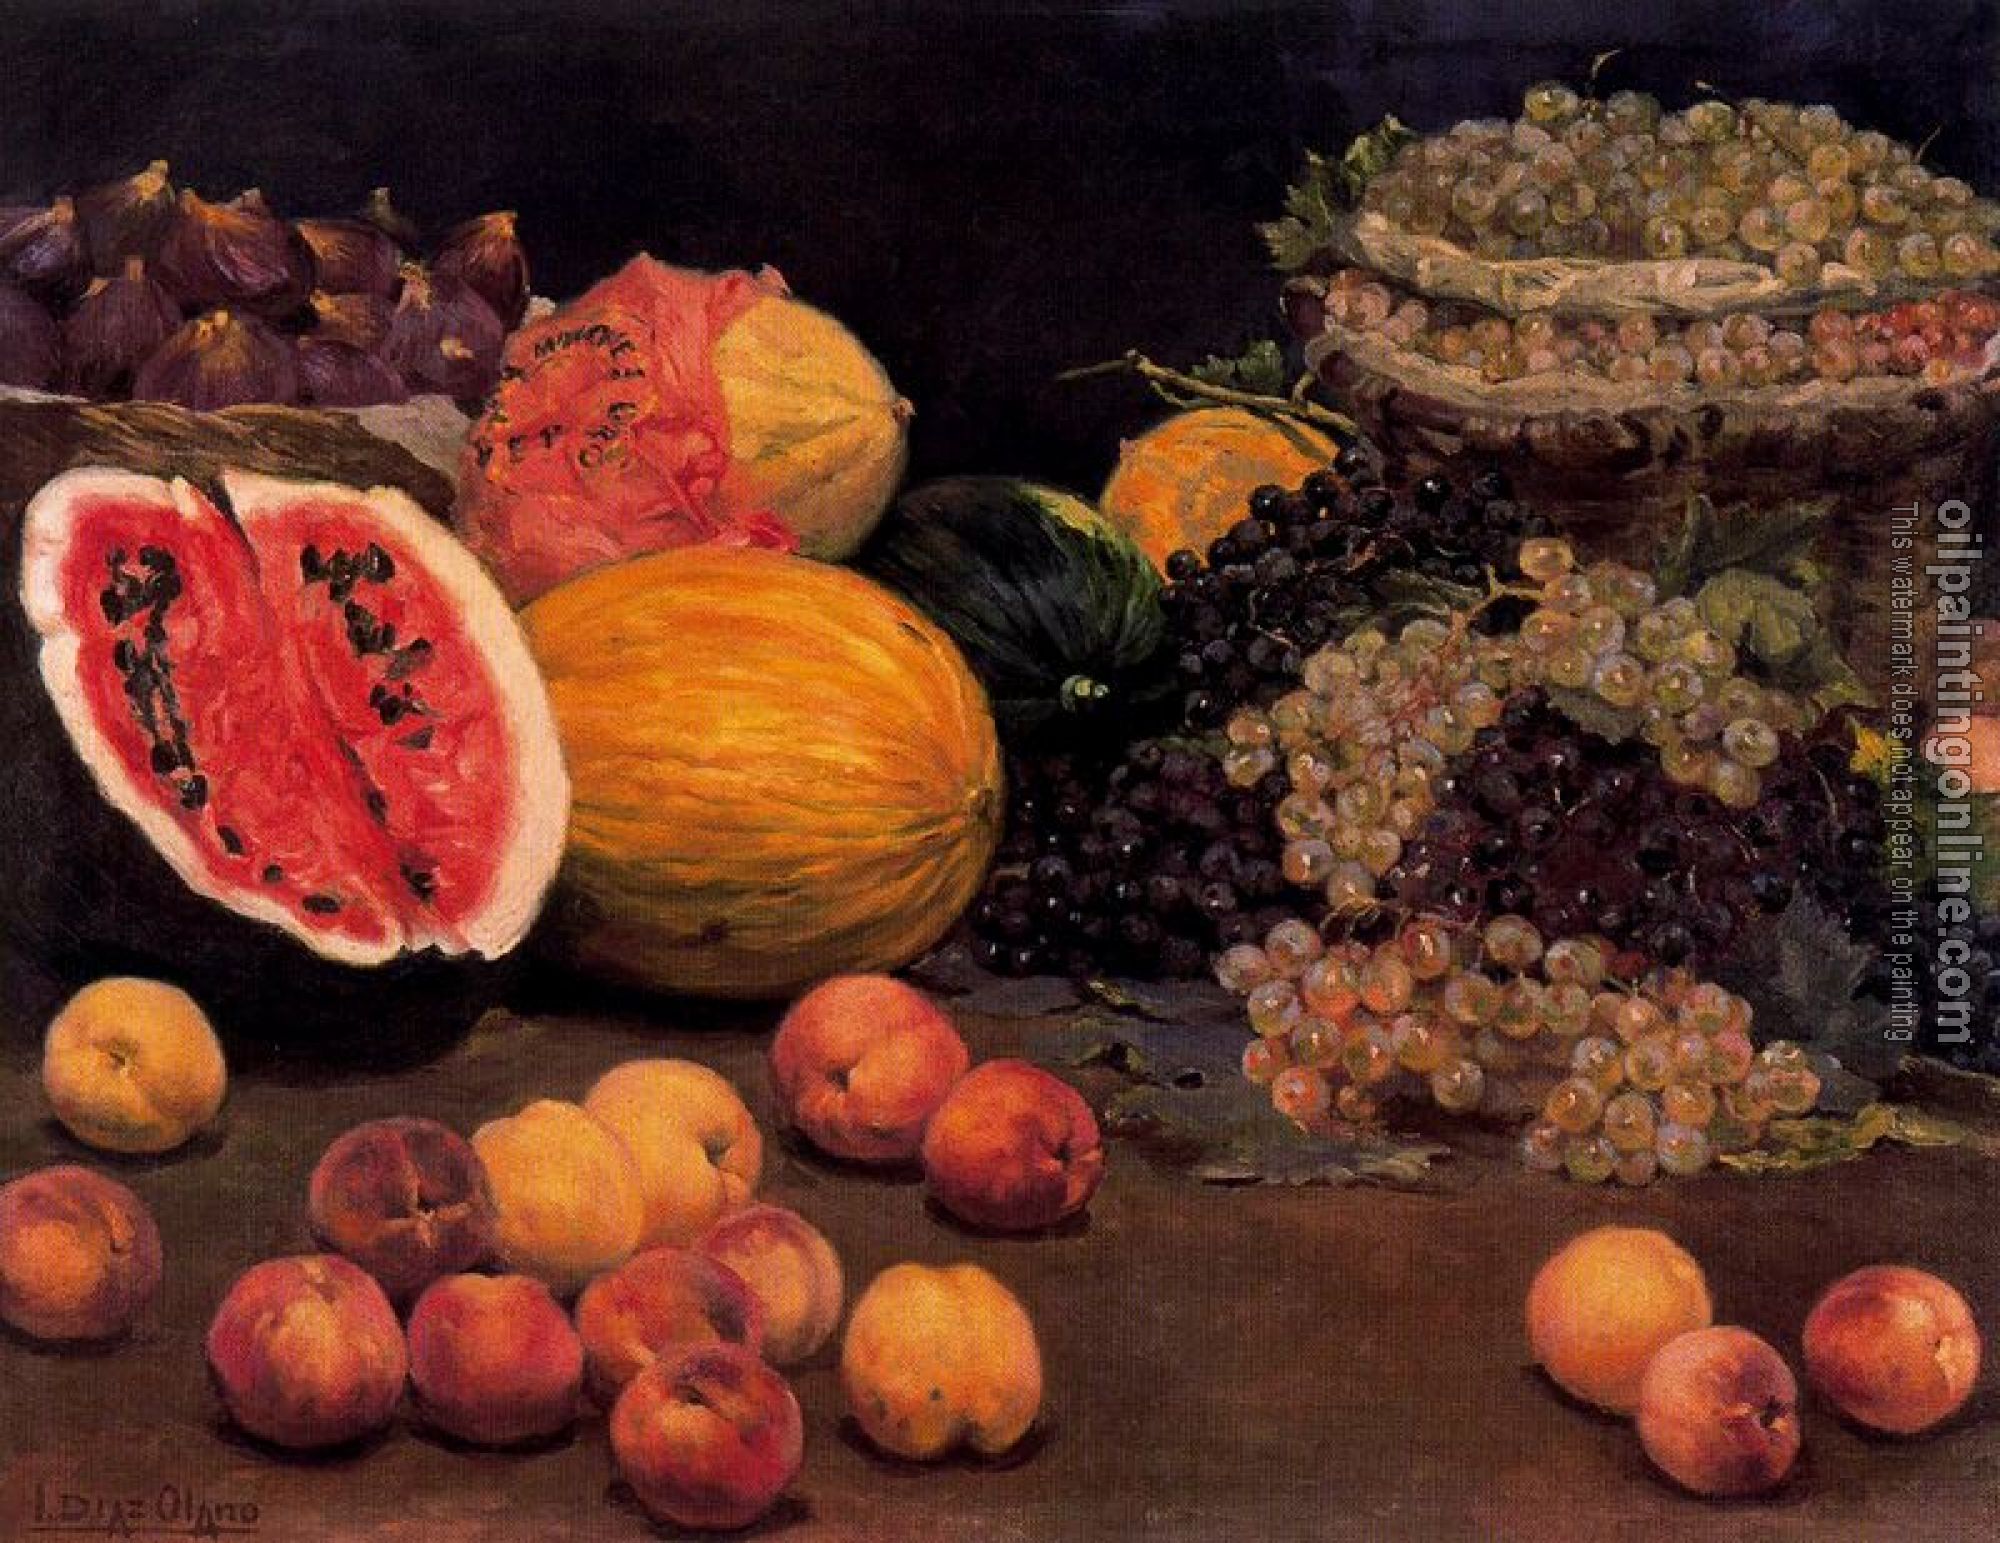 Ignacio Diaz Olano - Bodegon de frutas